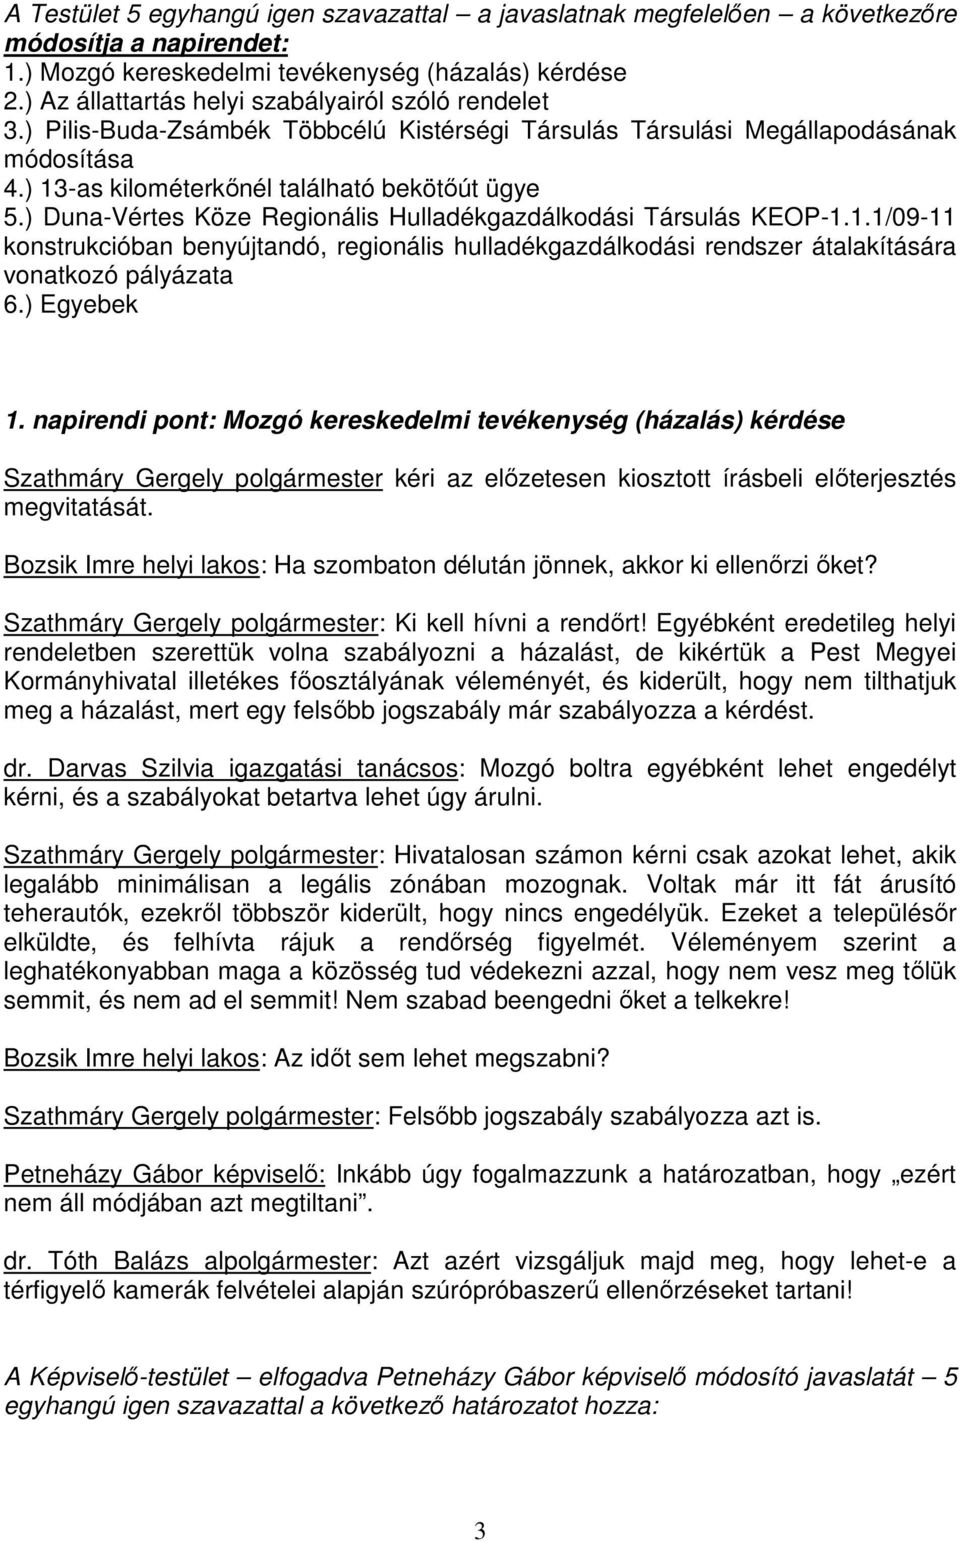 ) Duna-Vértes Köze Regionális Hulladékgazdálkodási Társulás KEOP-1.1.1/09-11 konstrukcióban benyújtandó, regionális hulladékgazdálkodási rendszer átalakítására vonatkozó pályázata 6.) Egyebek 1.